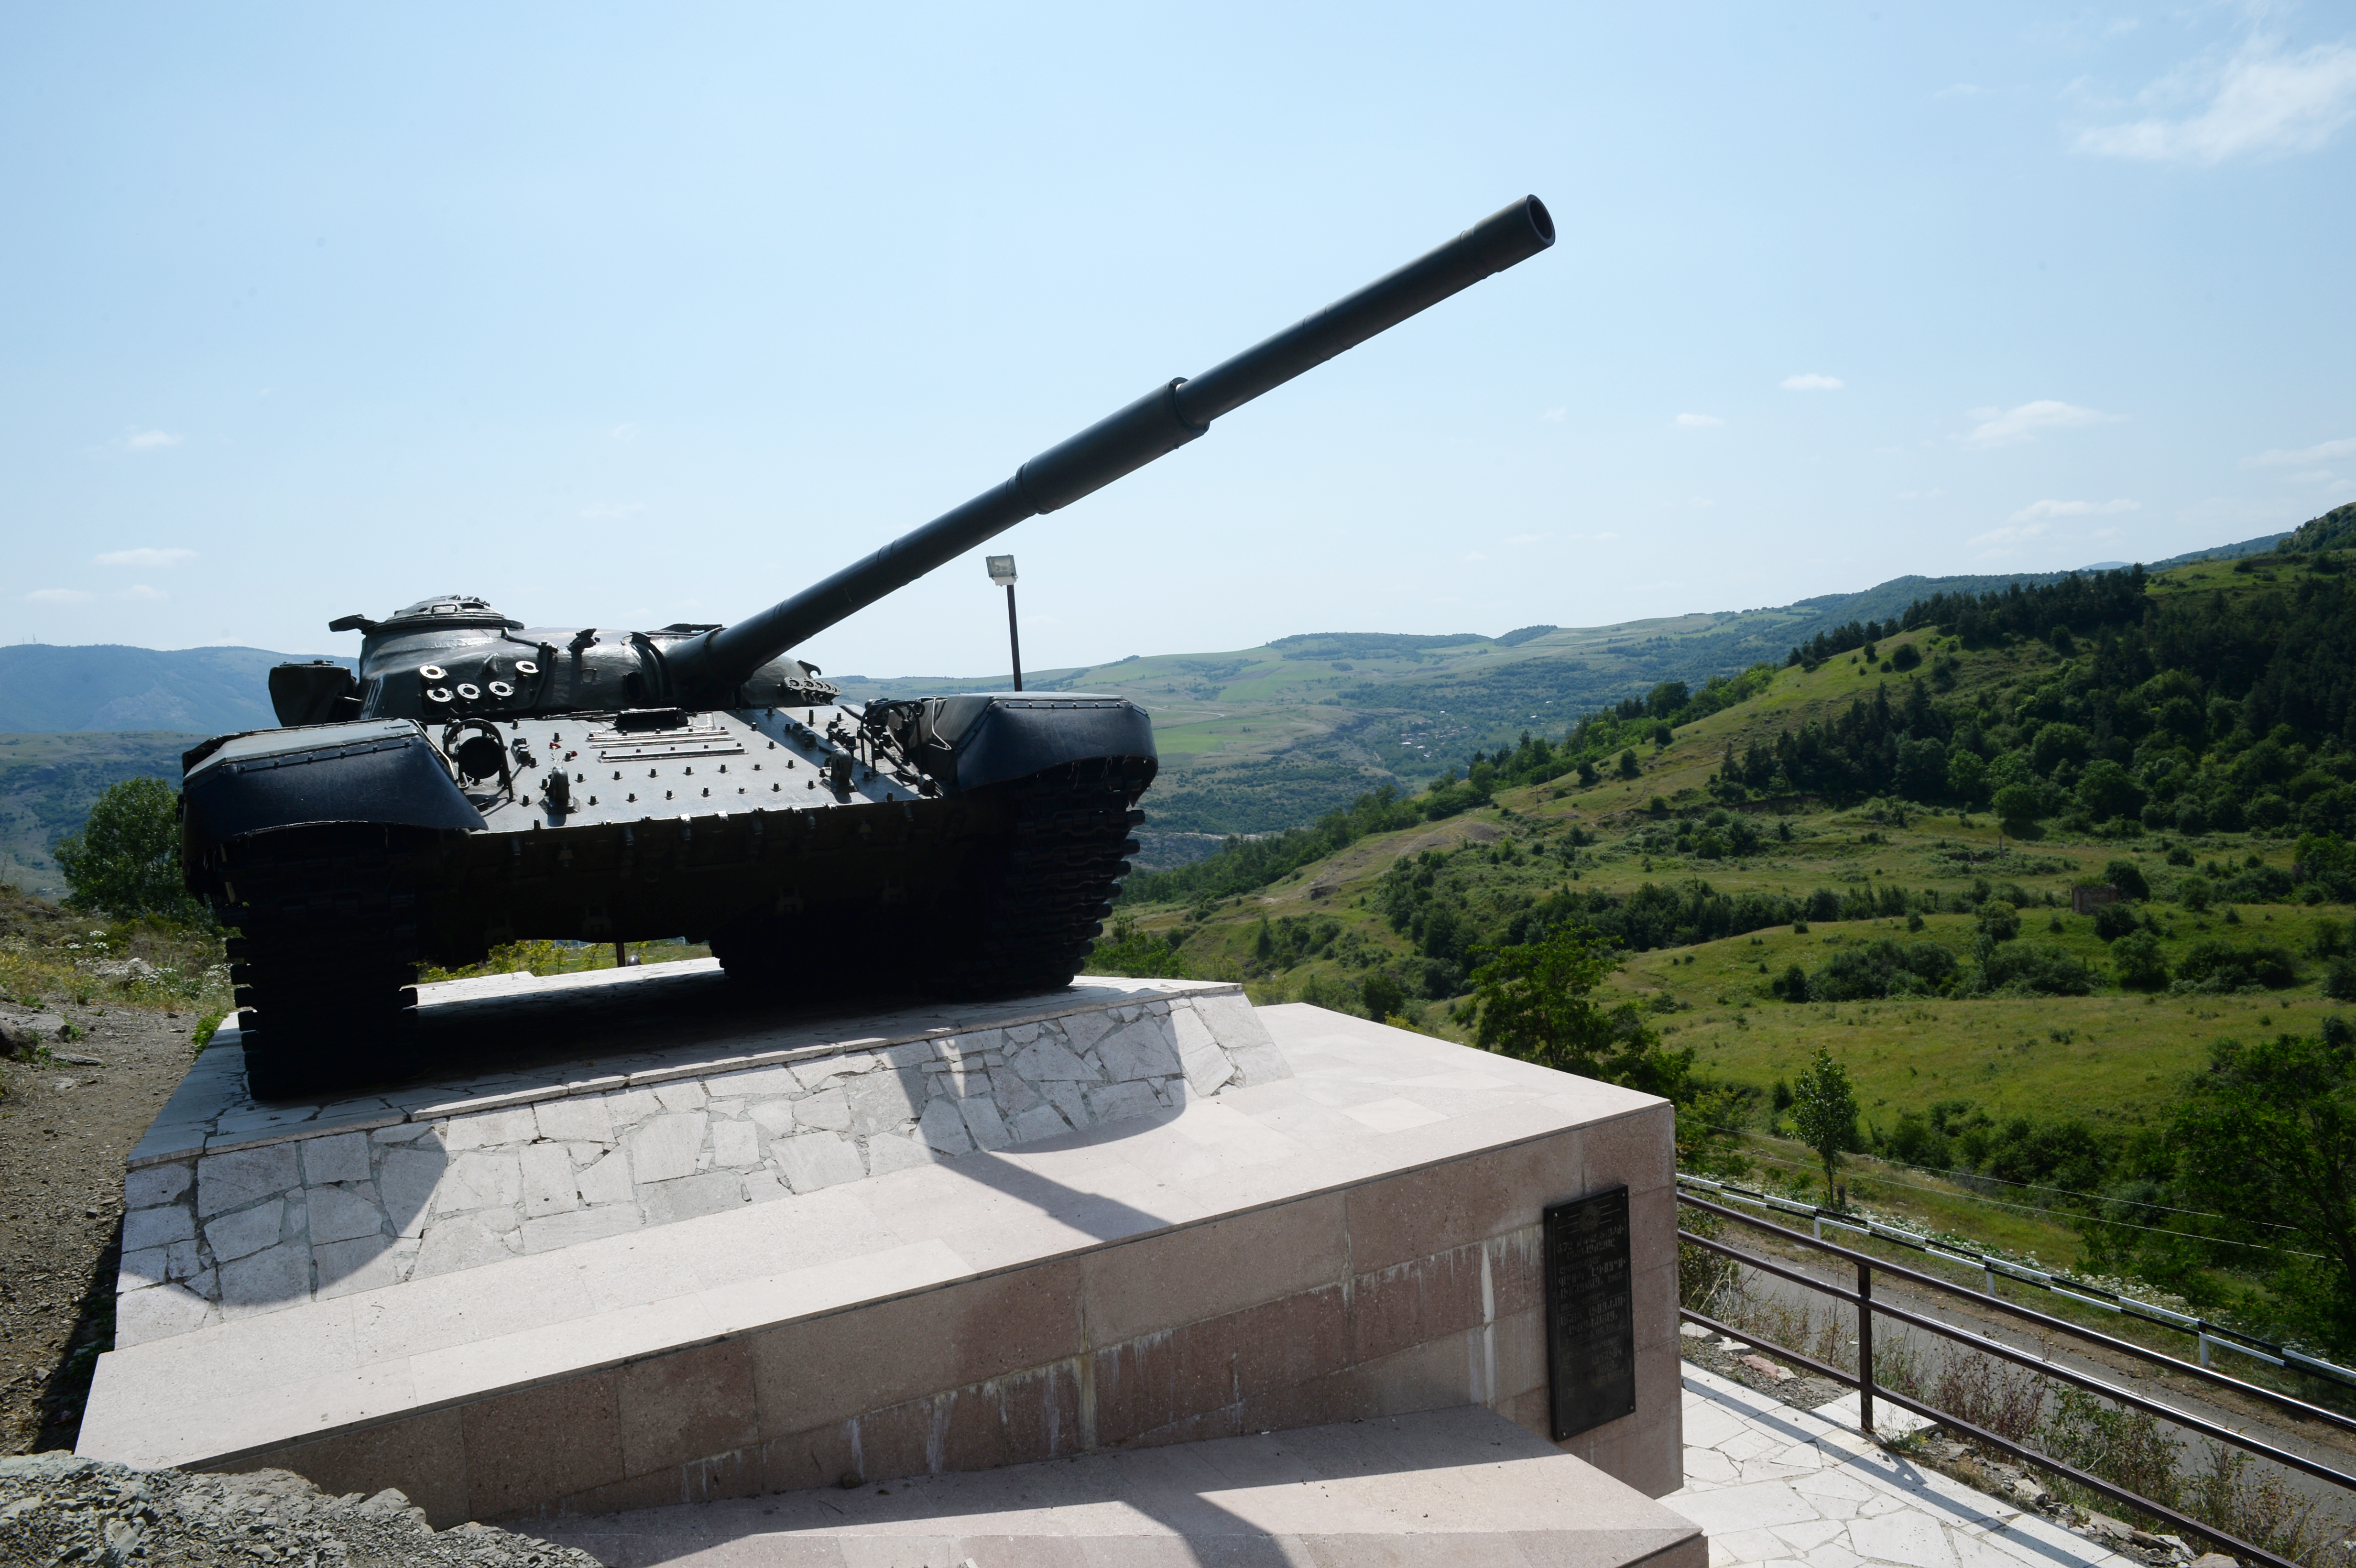 Ein Panzerdenkmal bei Schuschi in der Region Bergkarabach erinnert am 25.06.2014 an die Einnahme der strtegisch wichtigen Stadt Schuschi im Jahr 1992.